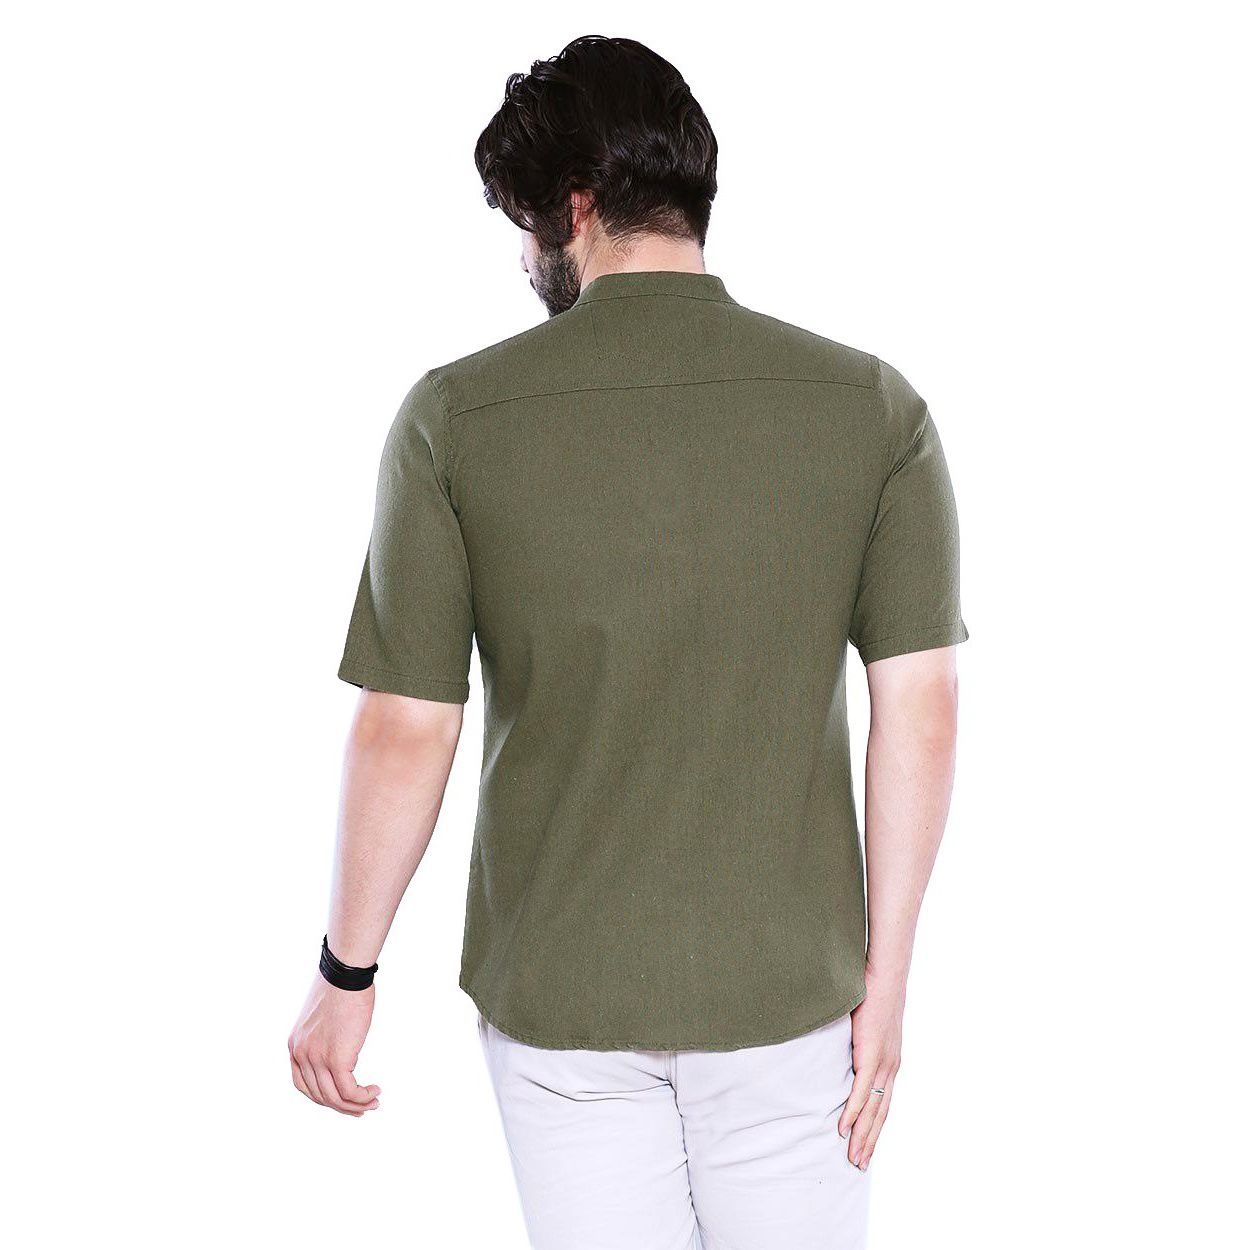 پیراهن آستین کوتاه مردانه مدل آستیاک - تن درست - سبز تيره - 8